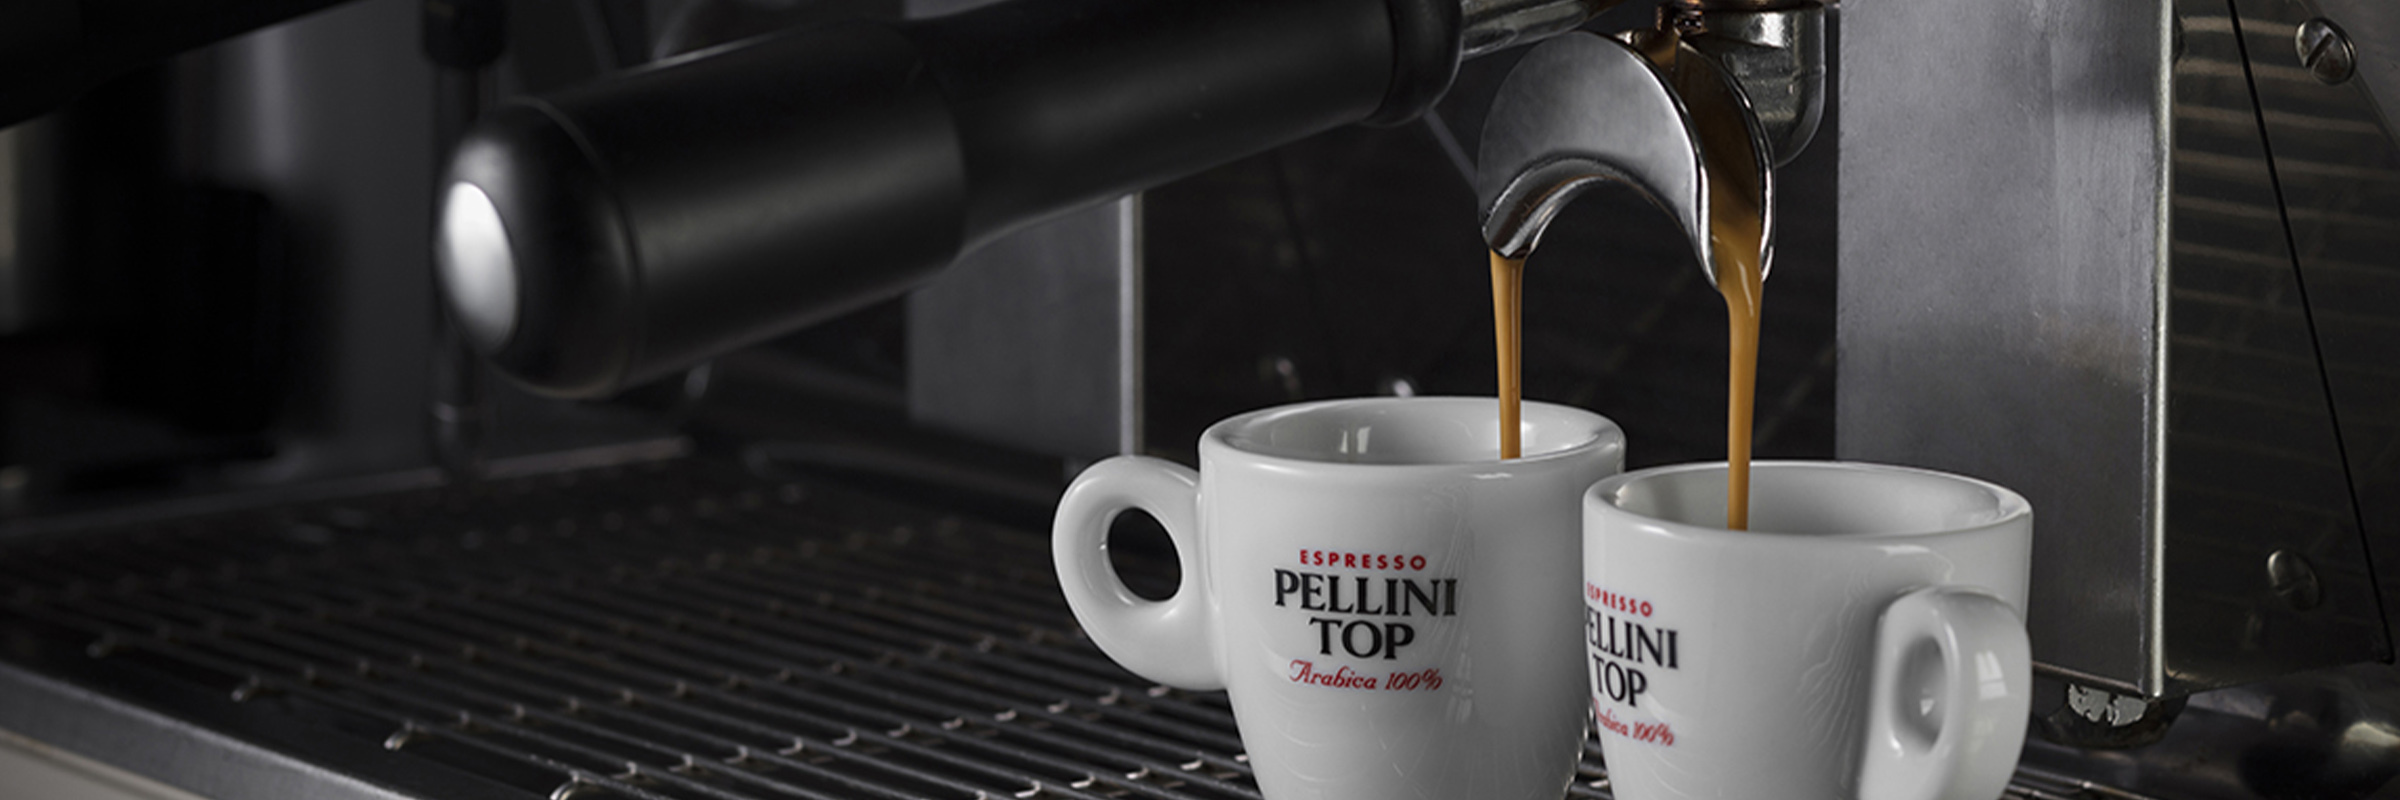 Pellini coffee: the authentic Italian Espresso - Shop